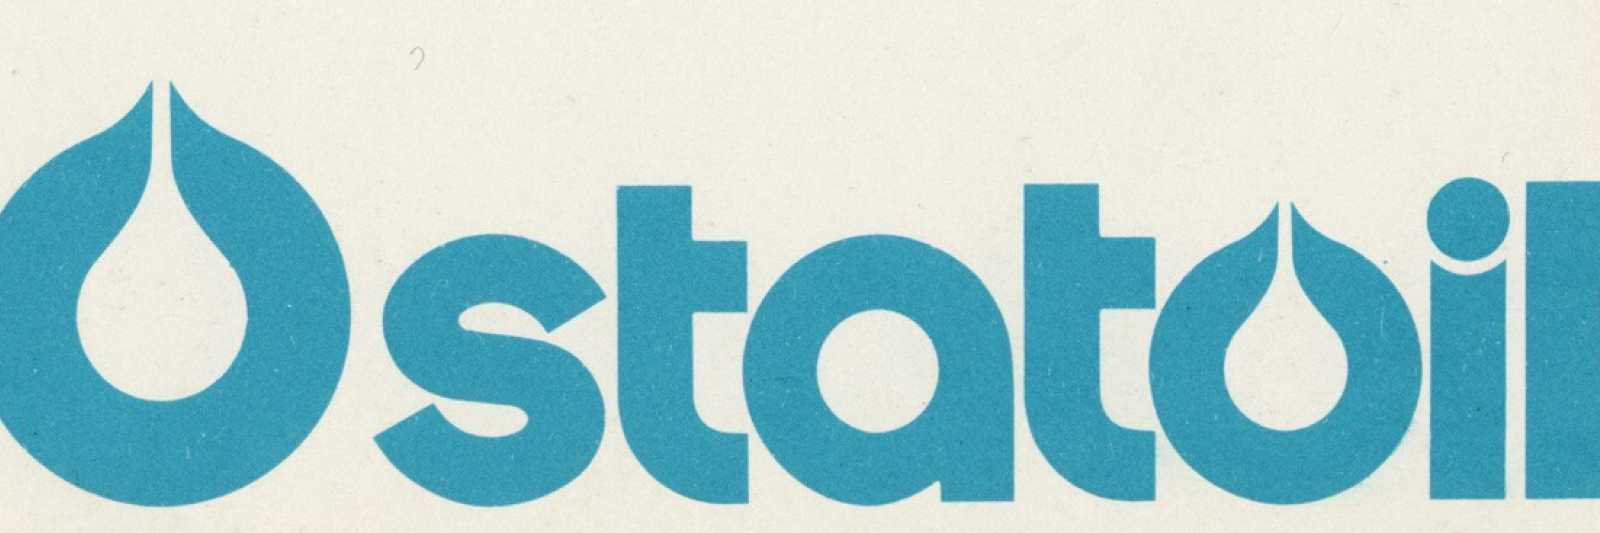 Statoil Logo - Statoil 40 år